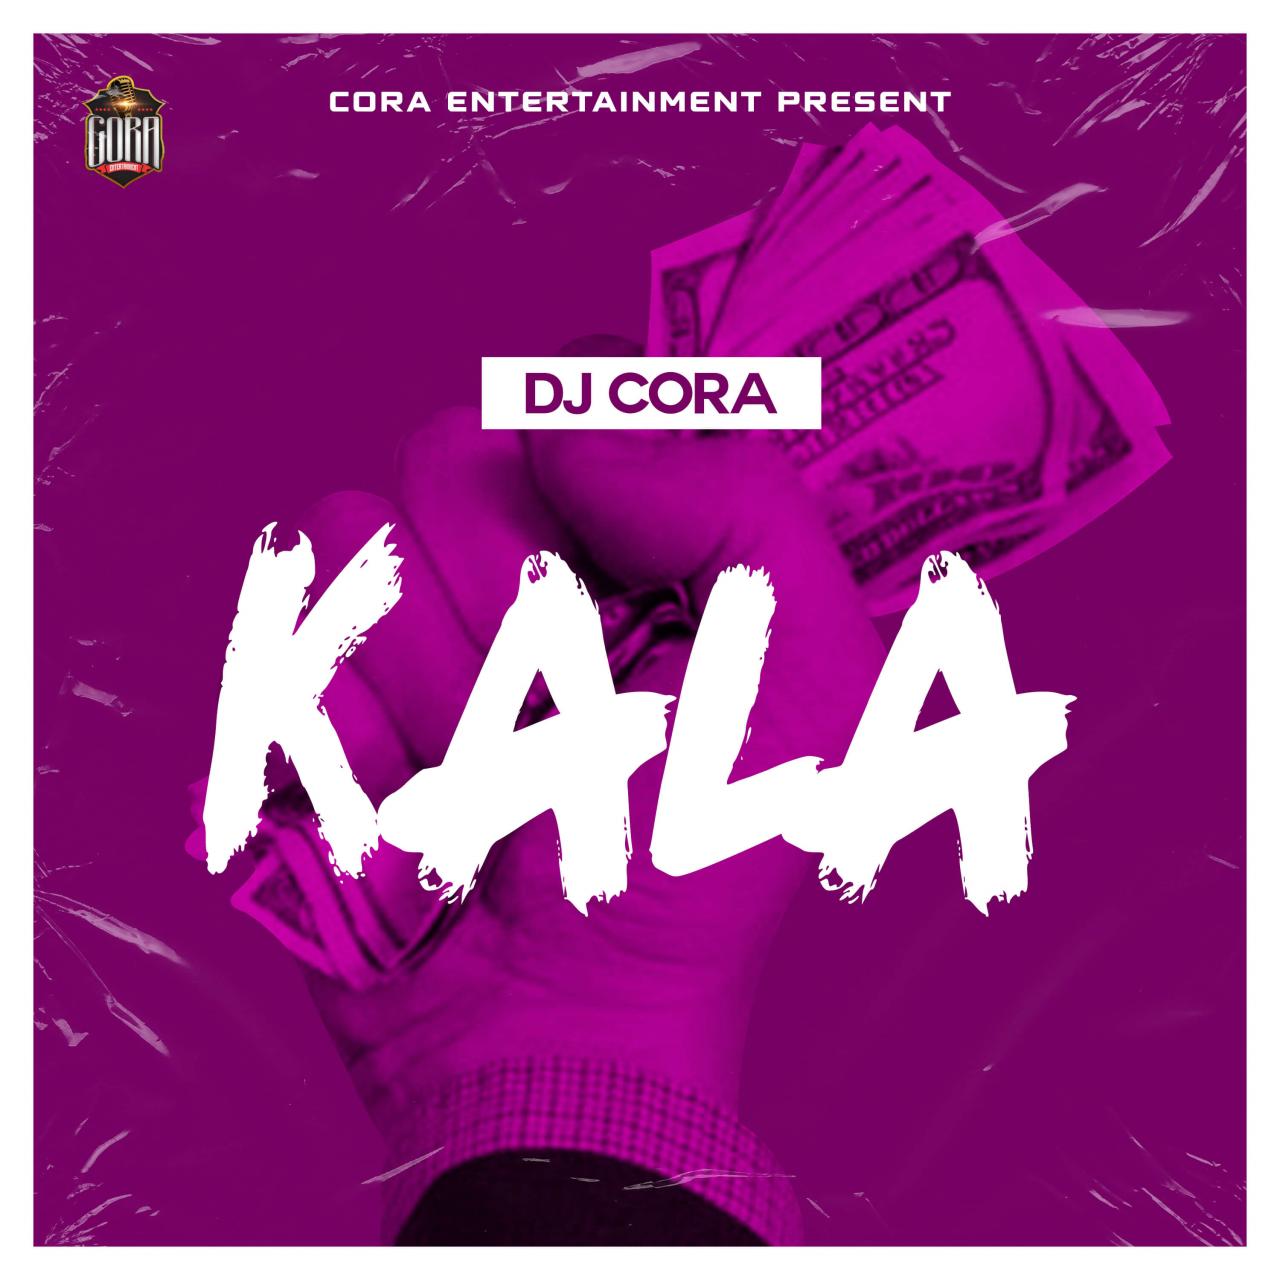 DJ Cora - Kala Beat 